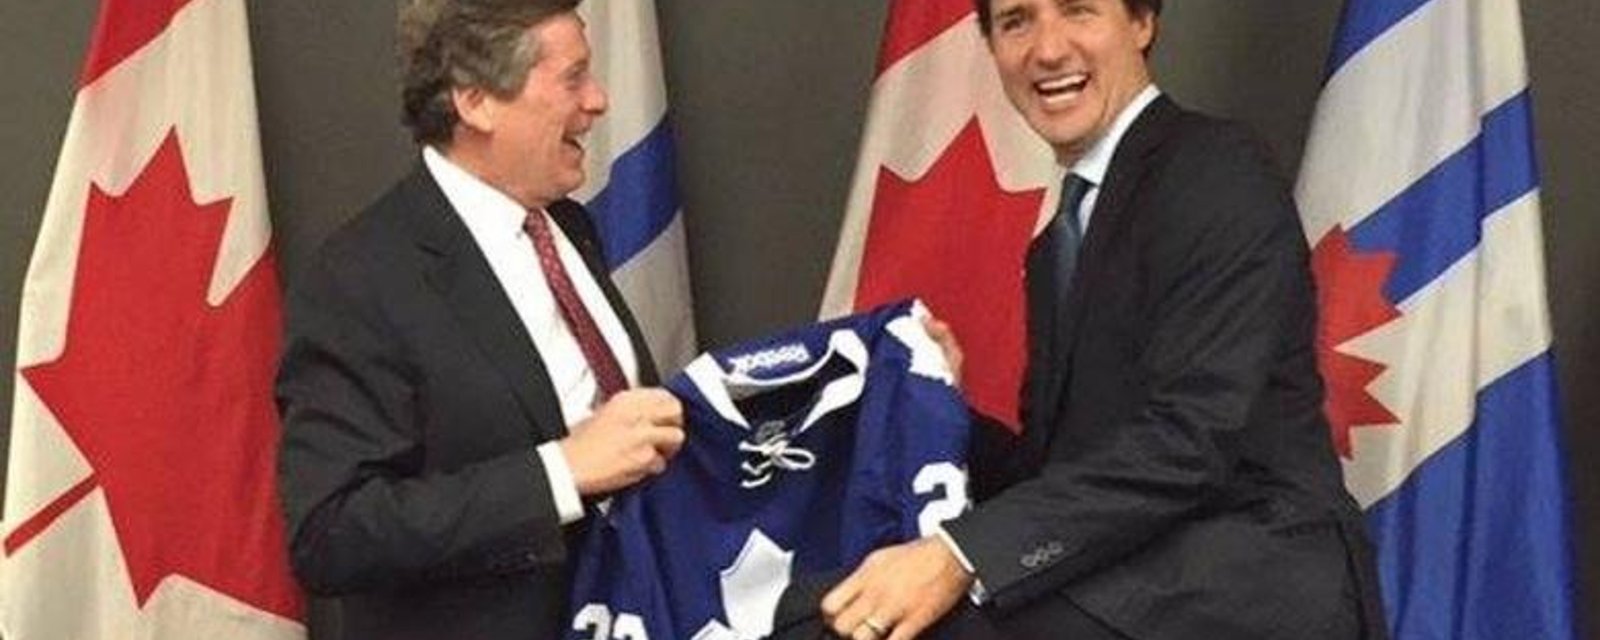 Justin Trudeau se fait offrir un chandail de Toronto, mais il montre qu'il est fan du CH!